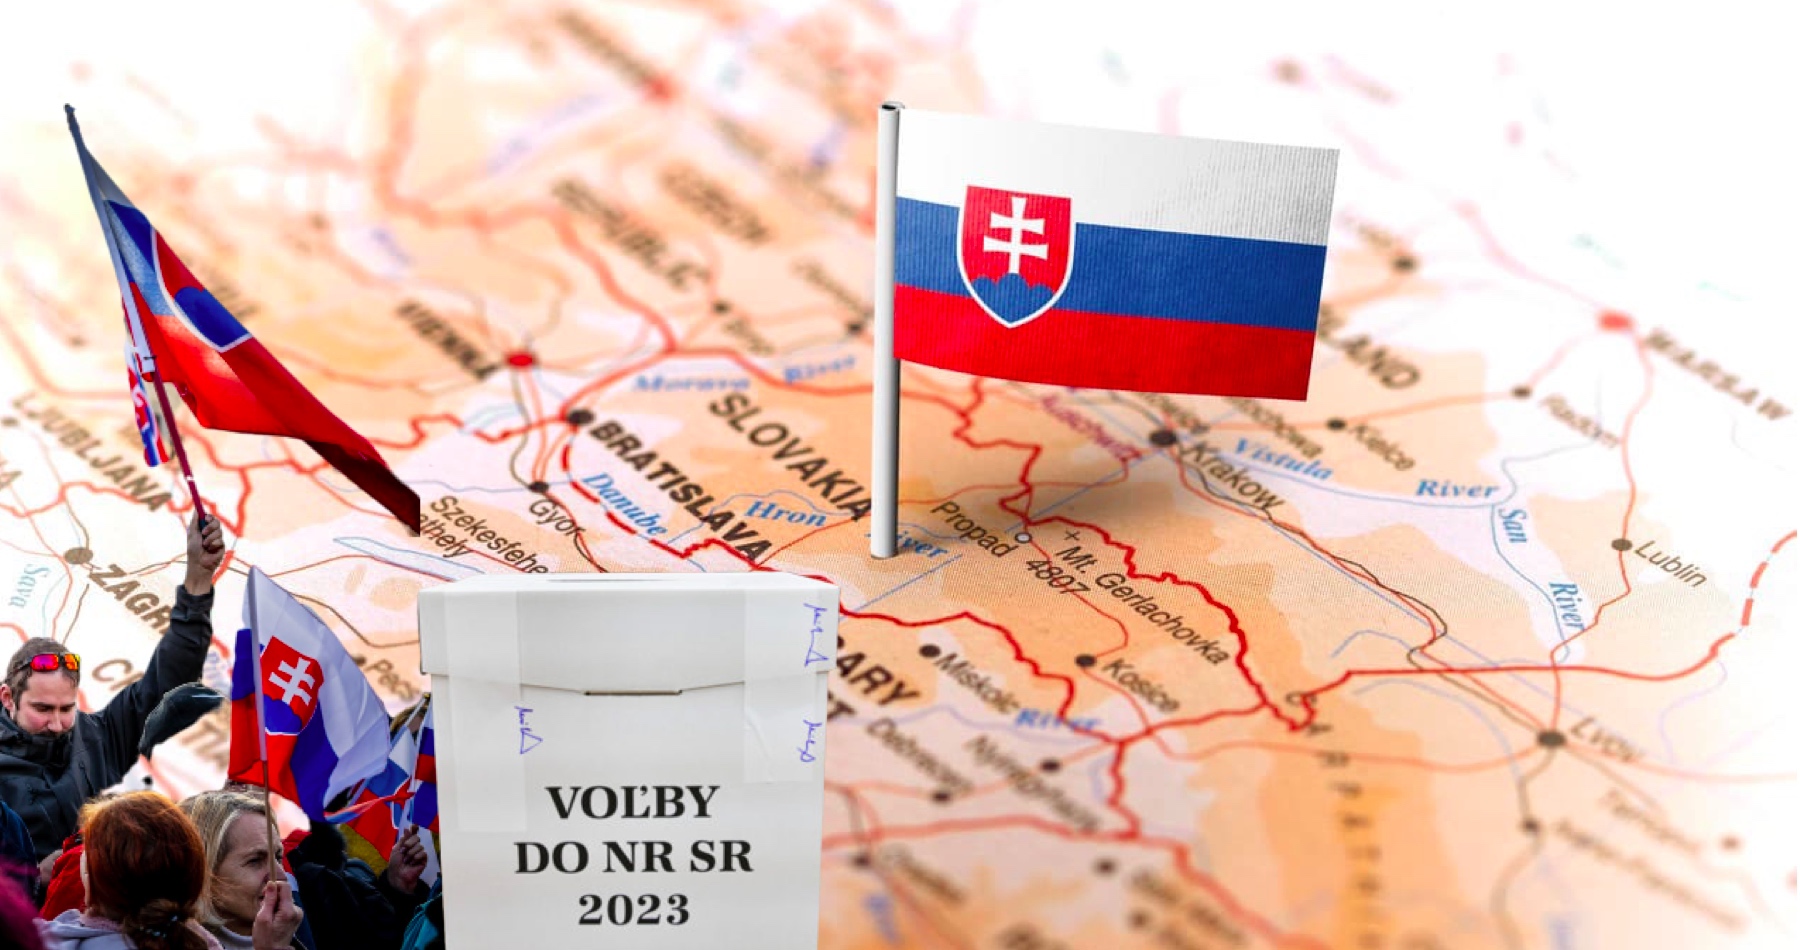 Ivo Strejček o výsledku slovenských volieb: Slováci nám ukázali, že je možné vzepřít se hloupým obviněním z „národovectví“ či mediálním masážím „prestižních“ západních deníků a lze si i proti všem zkusit najít vlastní cestu